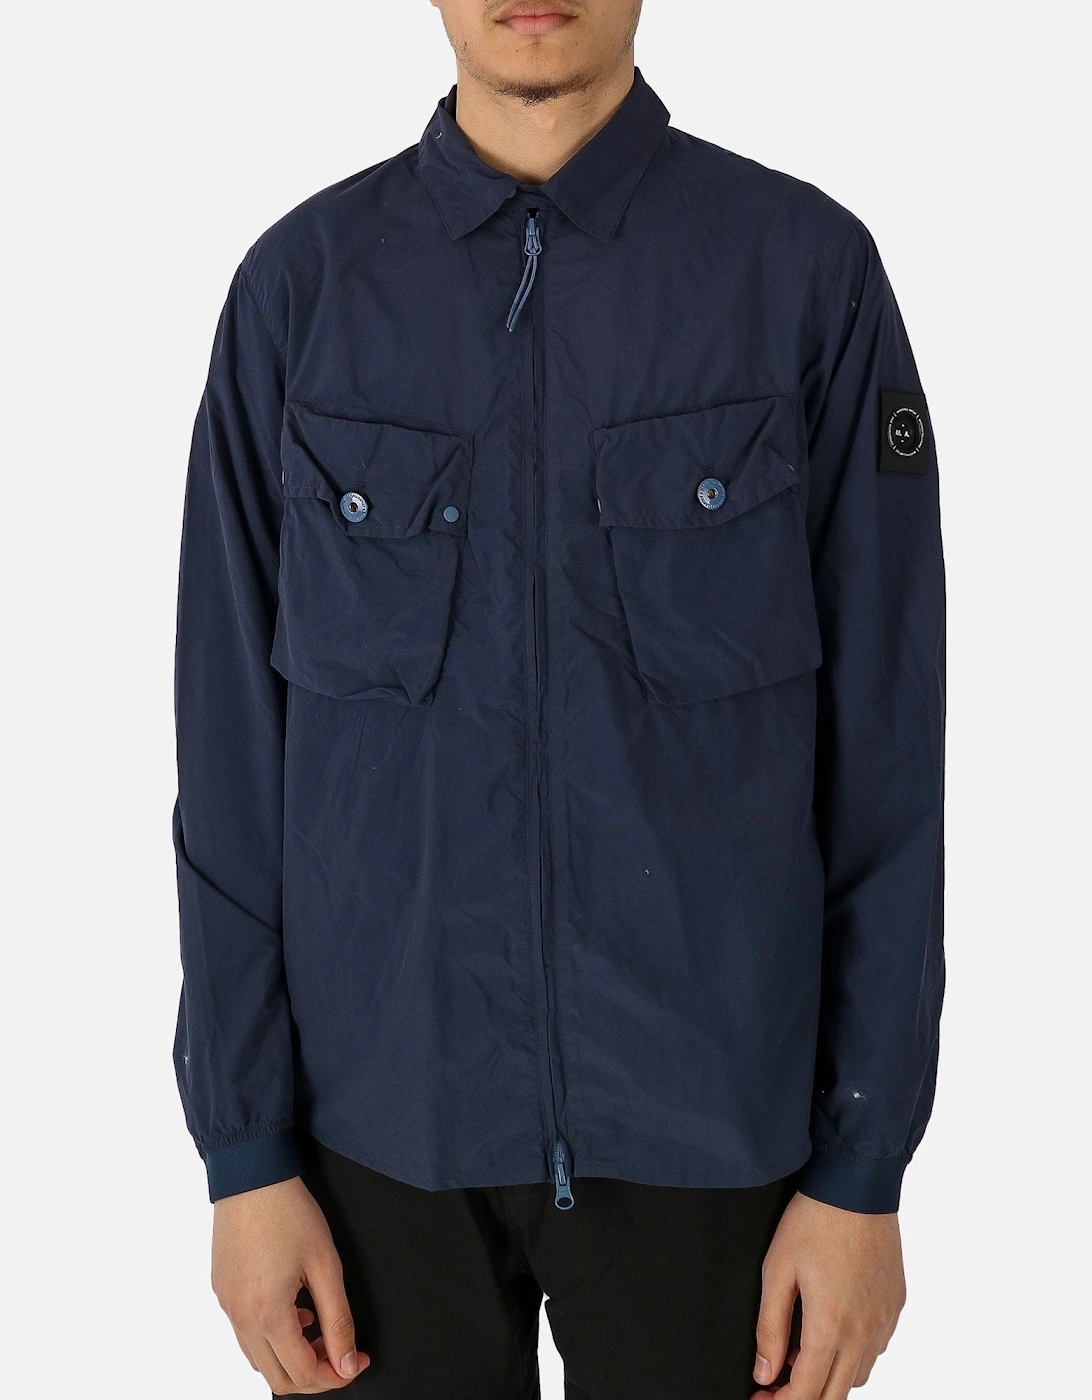 Tonaro Zip Navy Overshirt Jacket, 5 of 4